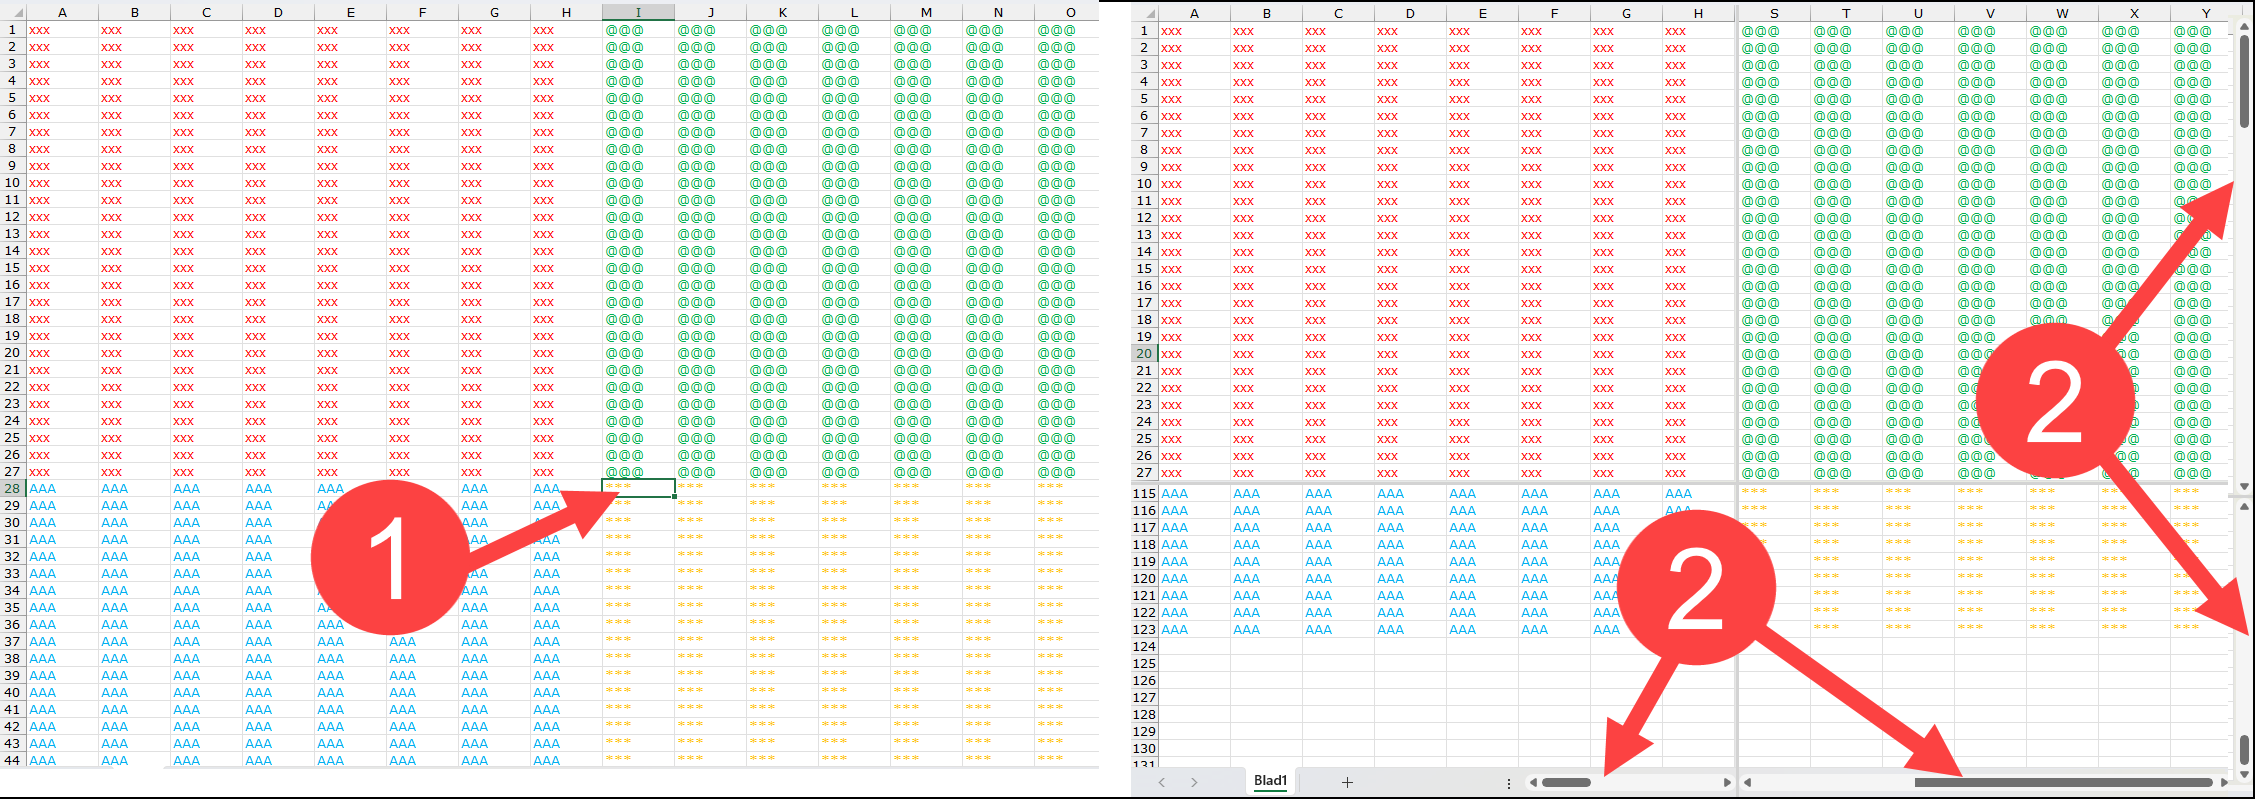 Schermafbeelding van een splitsing in Excel met 4 schermdelen.